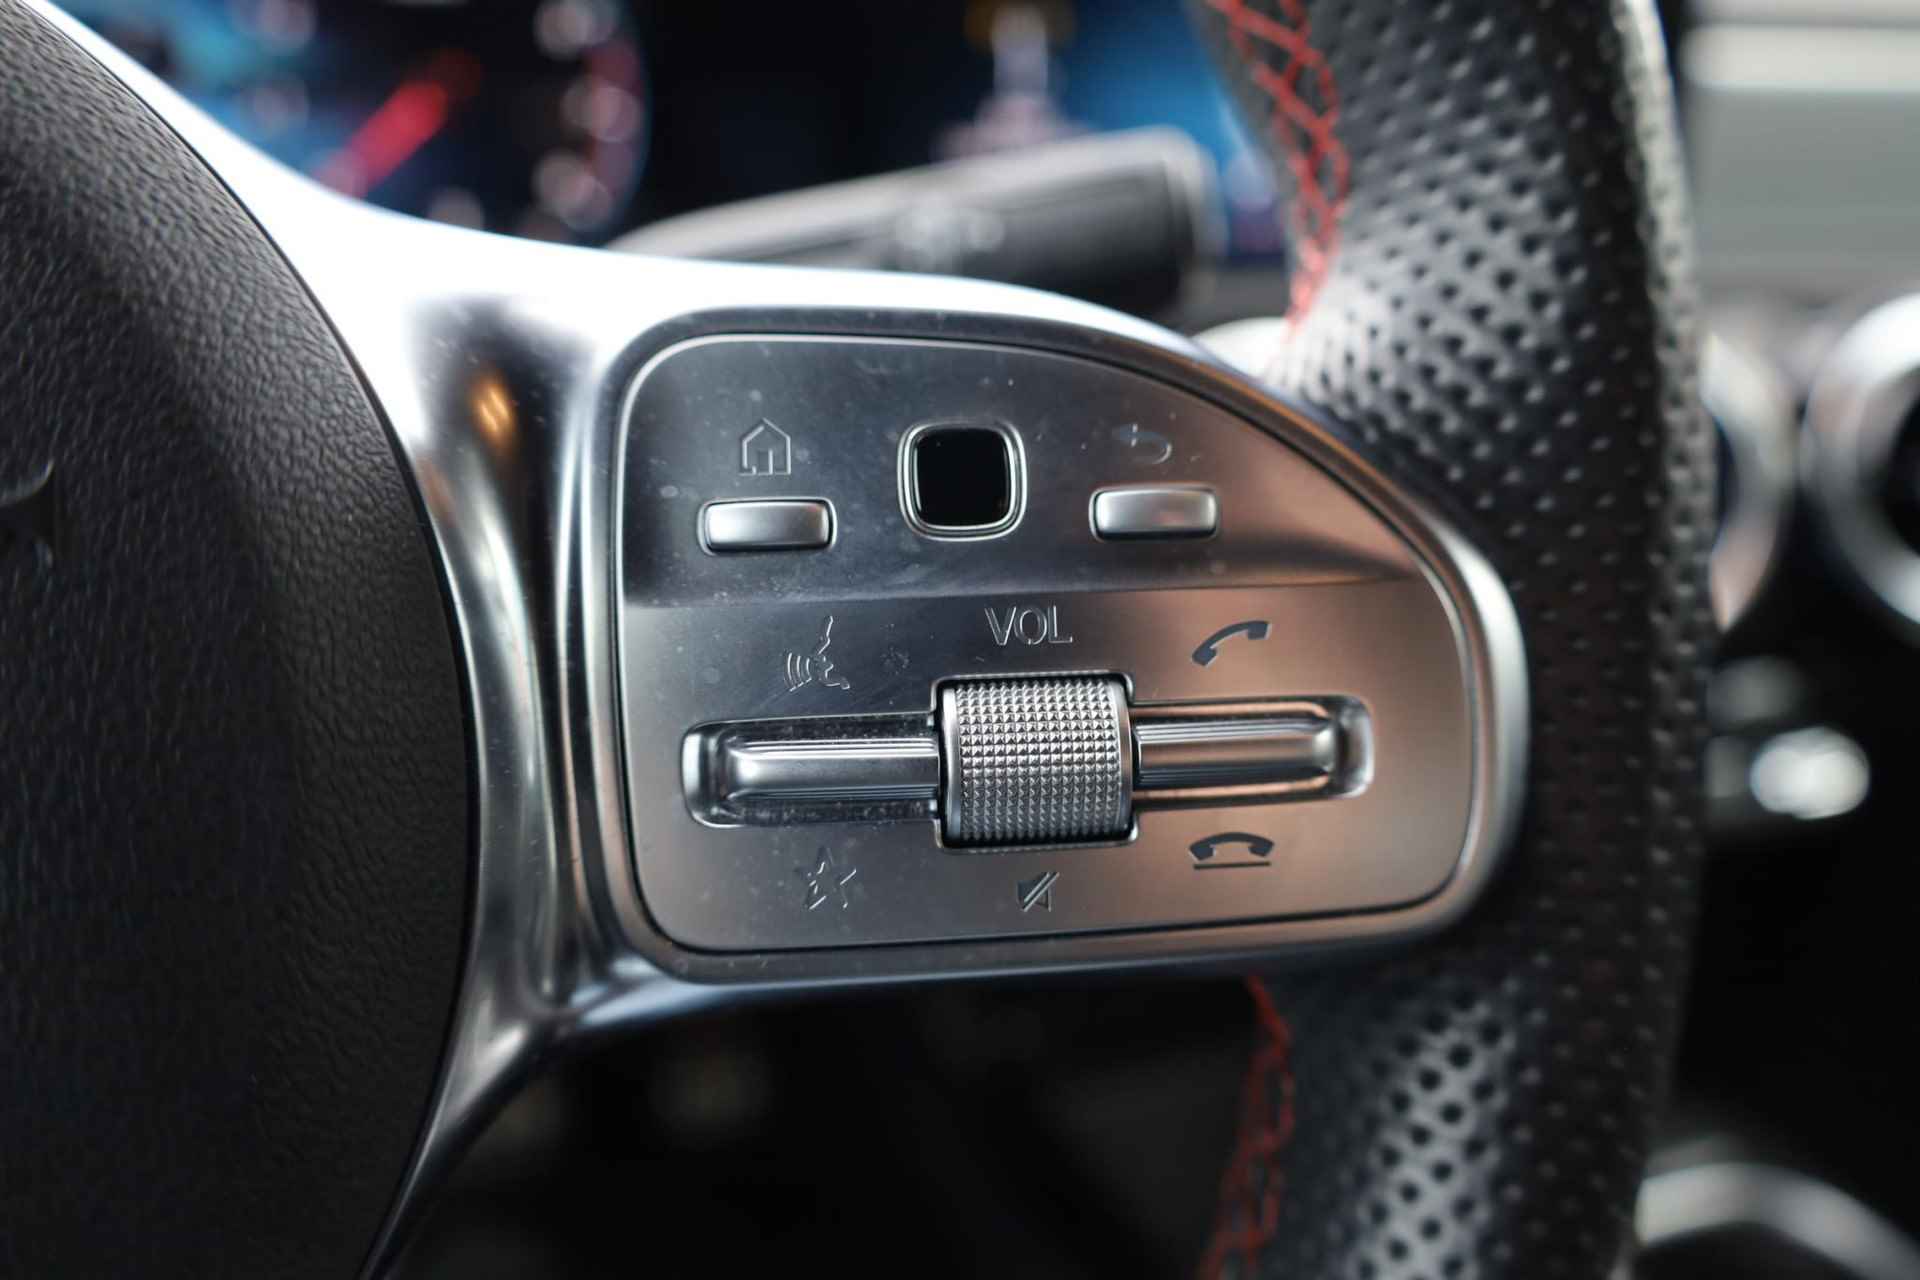 Mercedes-Benz A-klasse 200 Business Solution AMG 163PK / 120kW automaat, Leder / alcantara, winterset LMV, digitaal dashboard, navigatie, LED verlichting voor en achter, 18" LMV, stoelverwarming, parkeersensoren voor en achter, AMG bumpers - 18/44